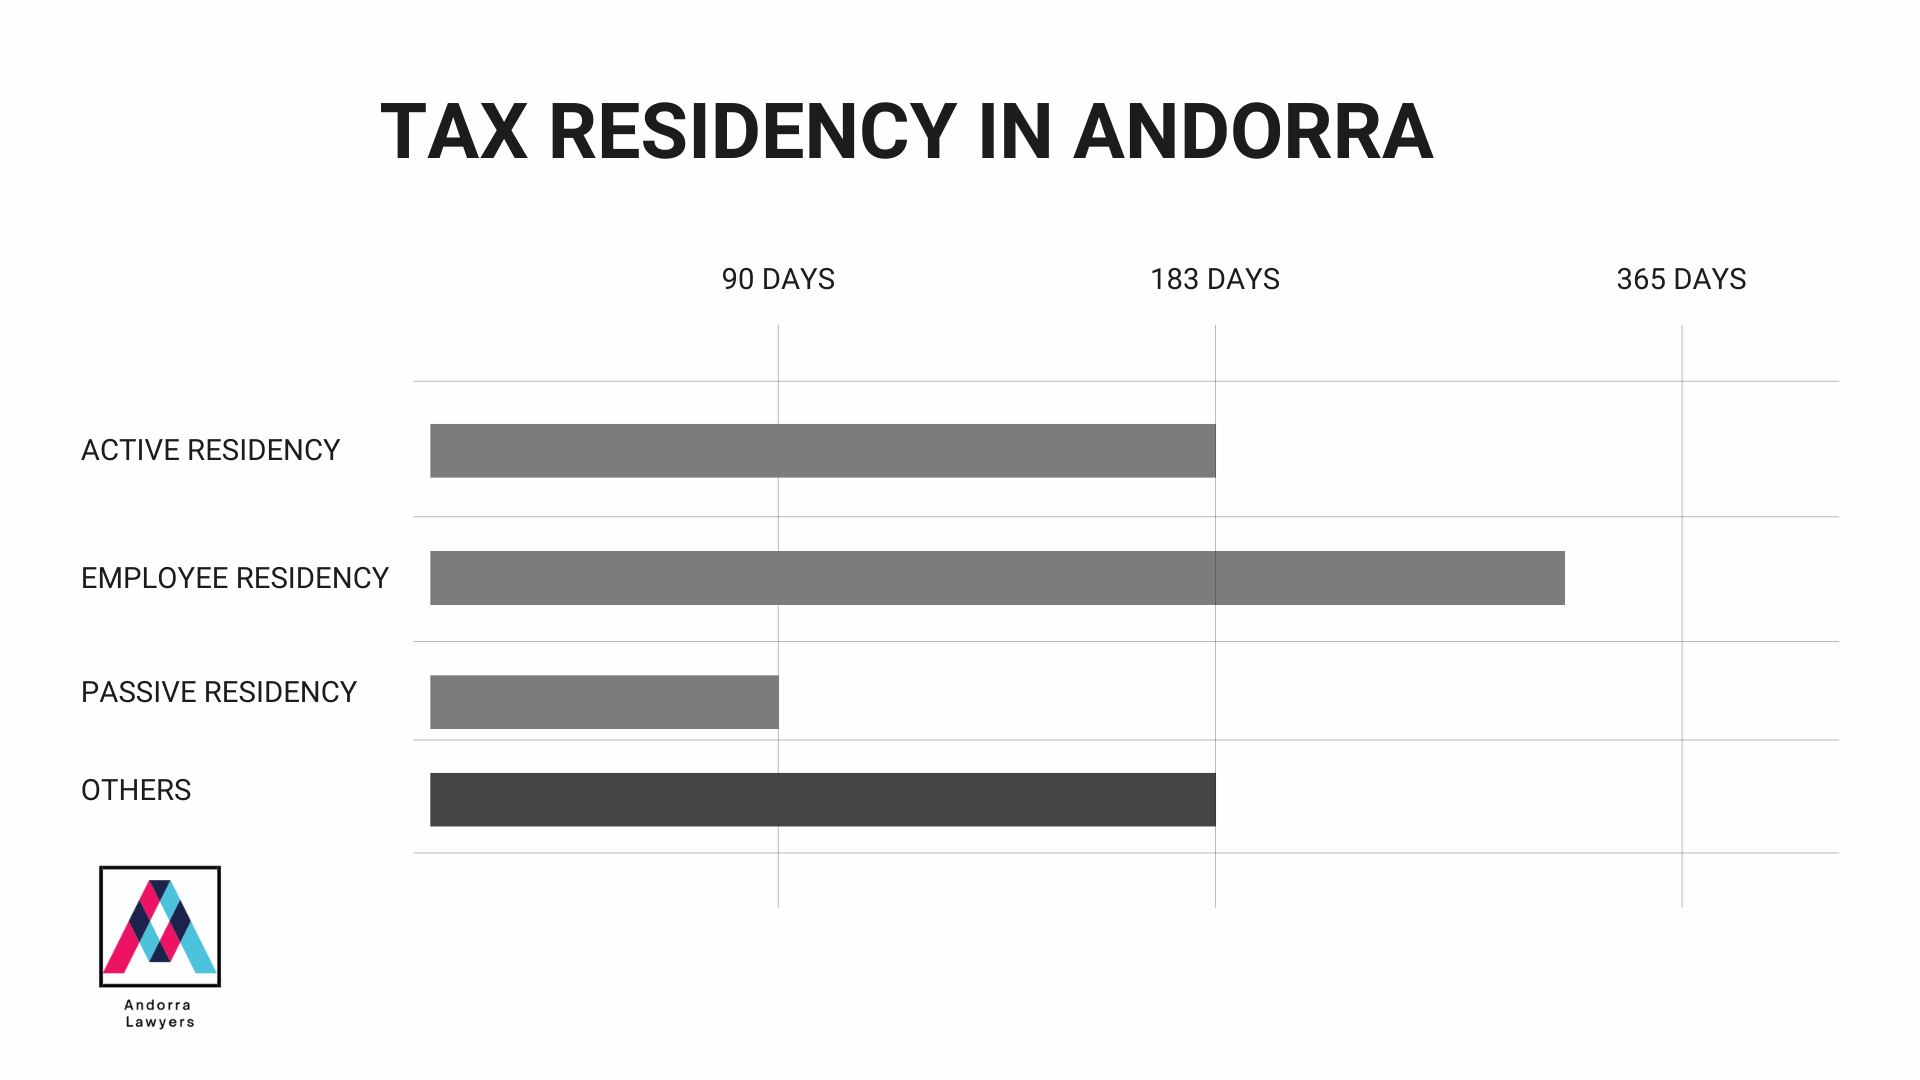 TAX RESIDENCY IN ANDORRA